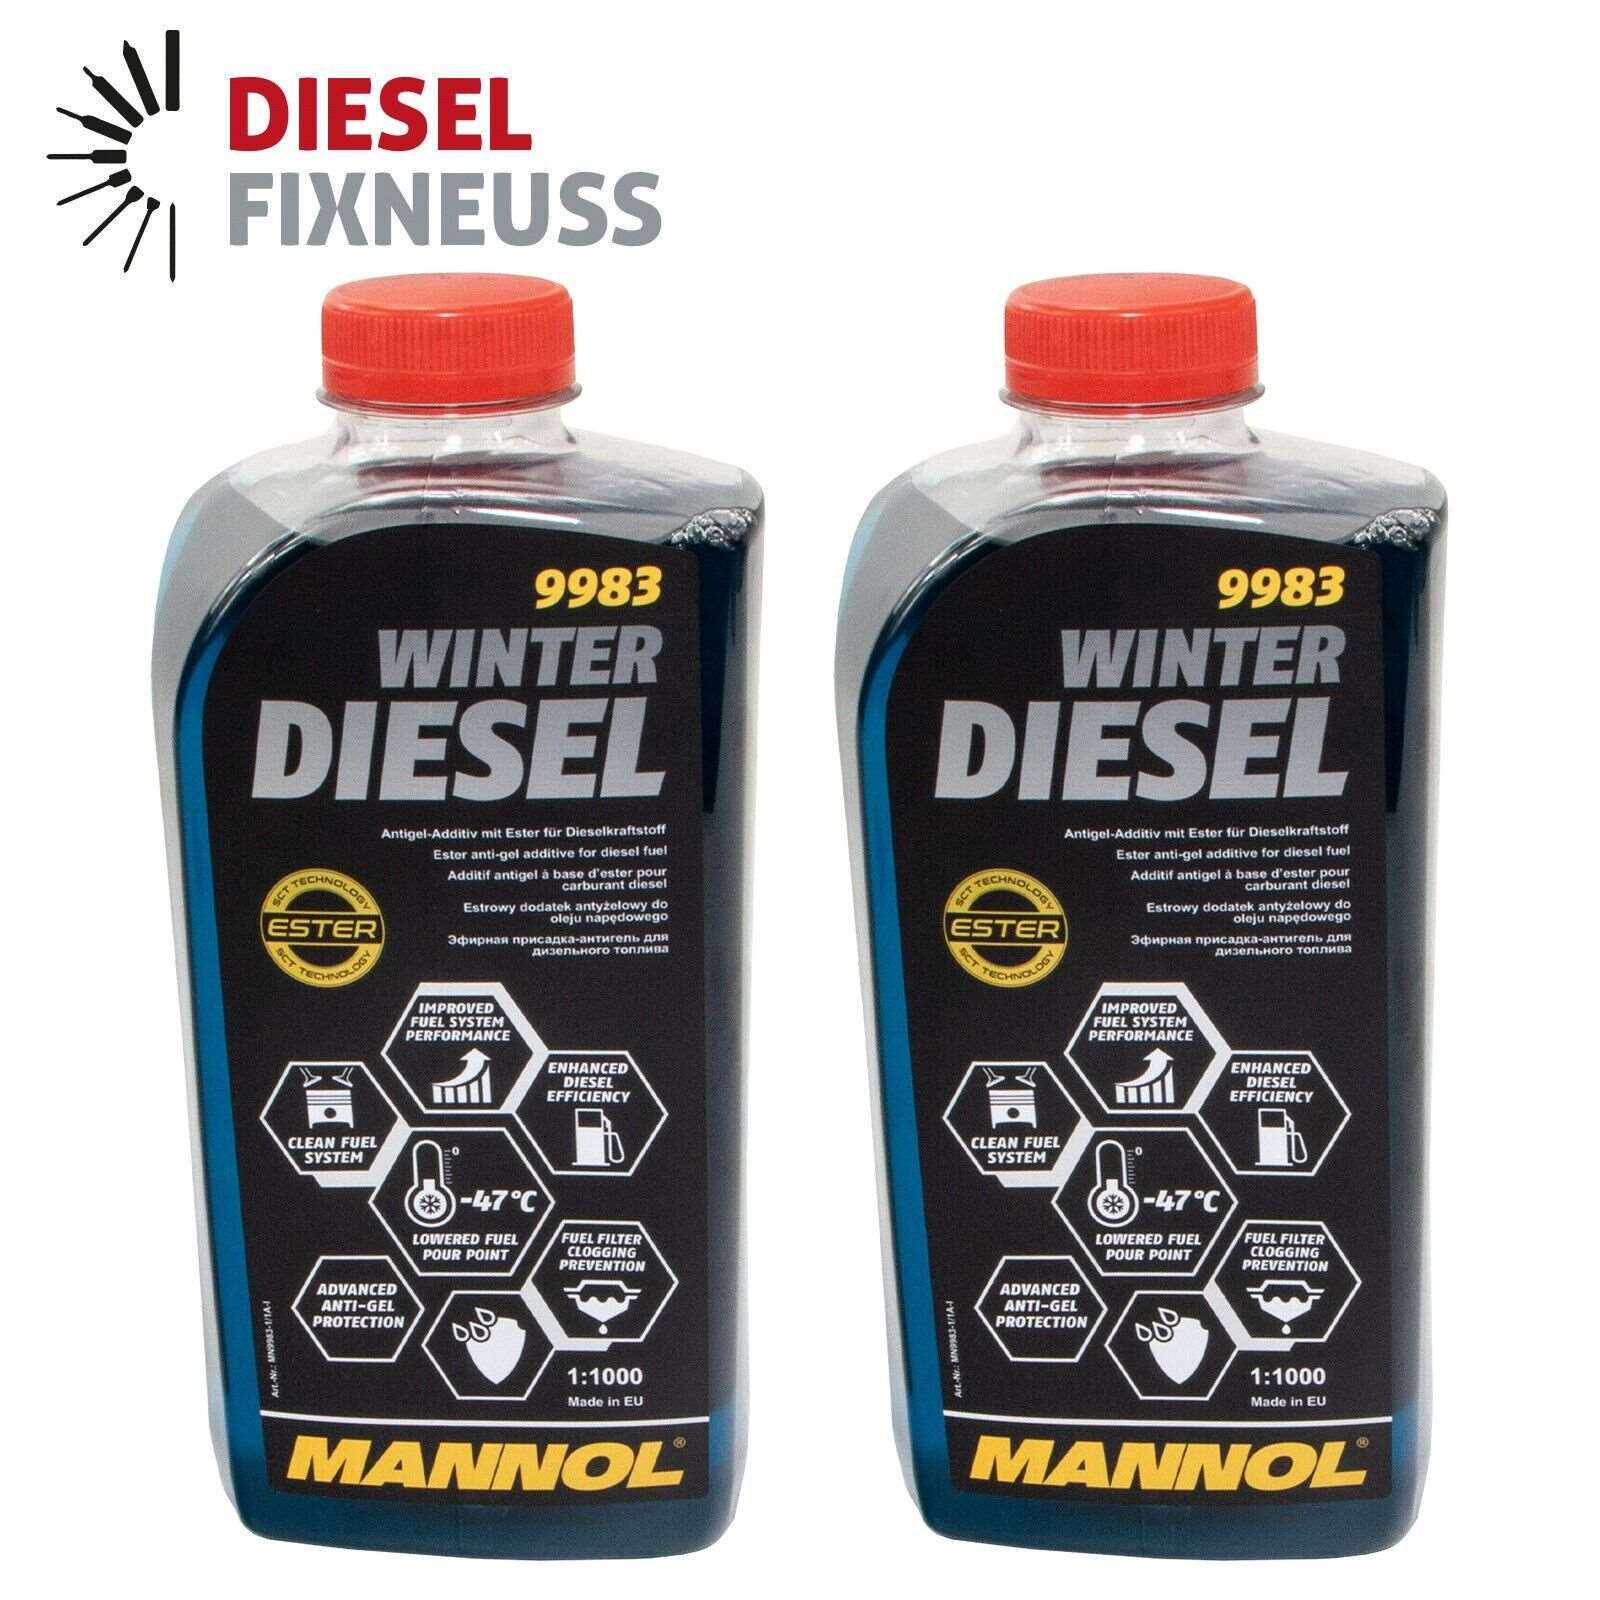 2x Winter Diesel Kraftstoff Additiv Heizöl 1 Liter MANNOL 9983 Fließ Fit Zusatz